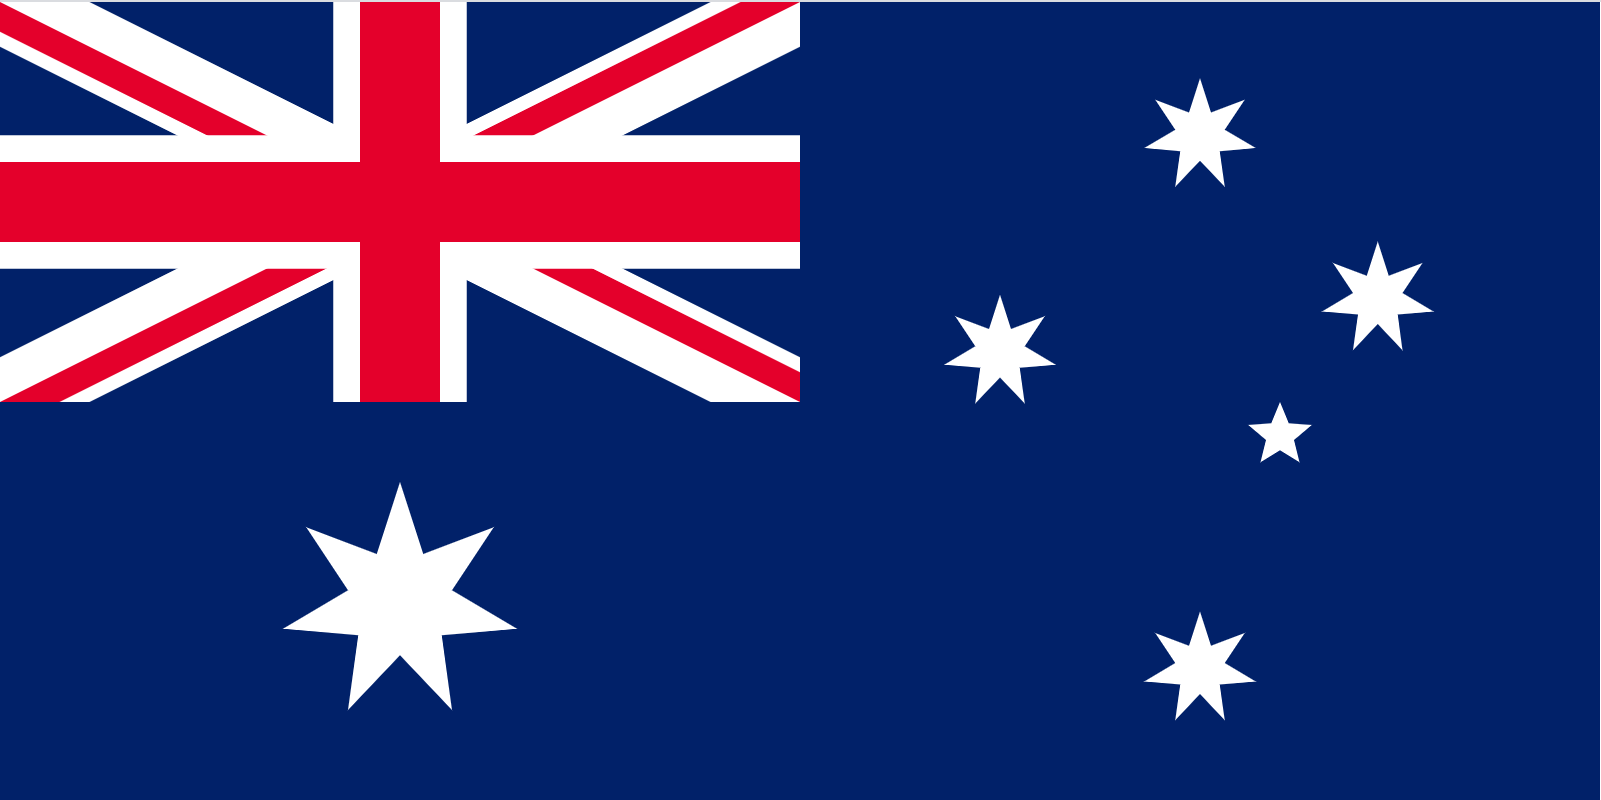 เตือนอุตสาหกรรมนมรับมือการเปิดเสรีนมและผลิตภัณฑ์นมจากออสเตรเลียและนิวซีแลนด์